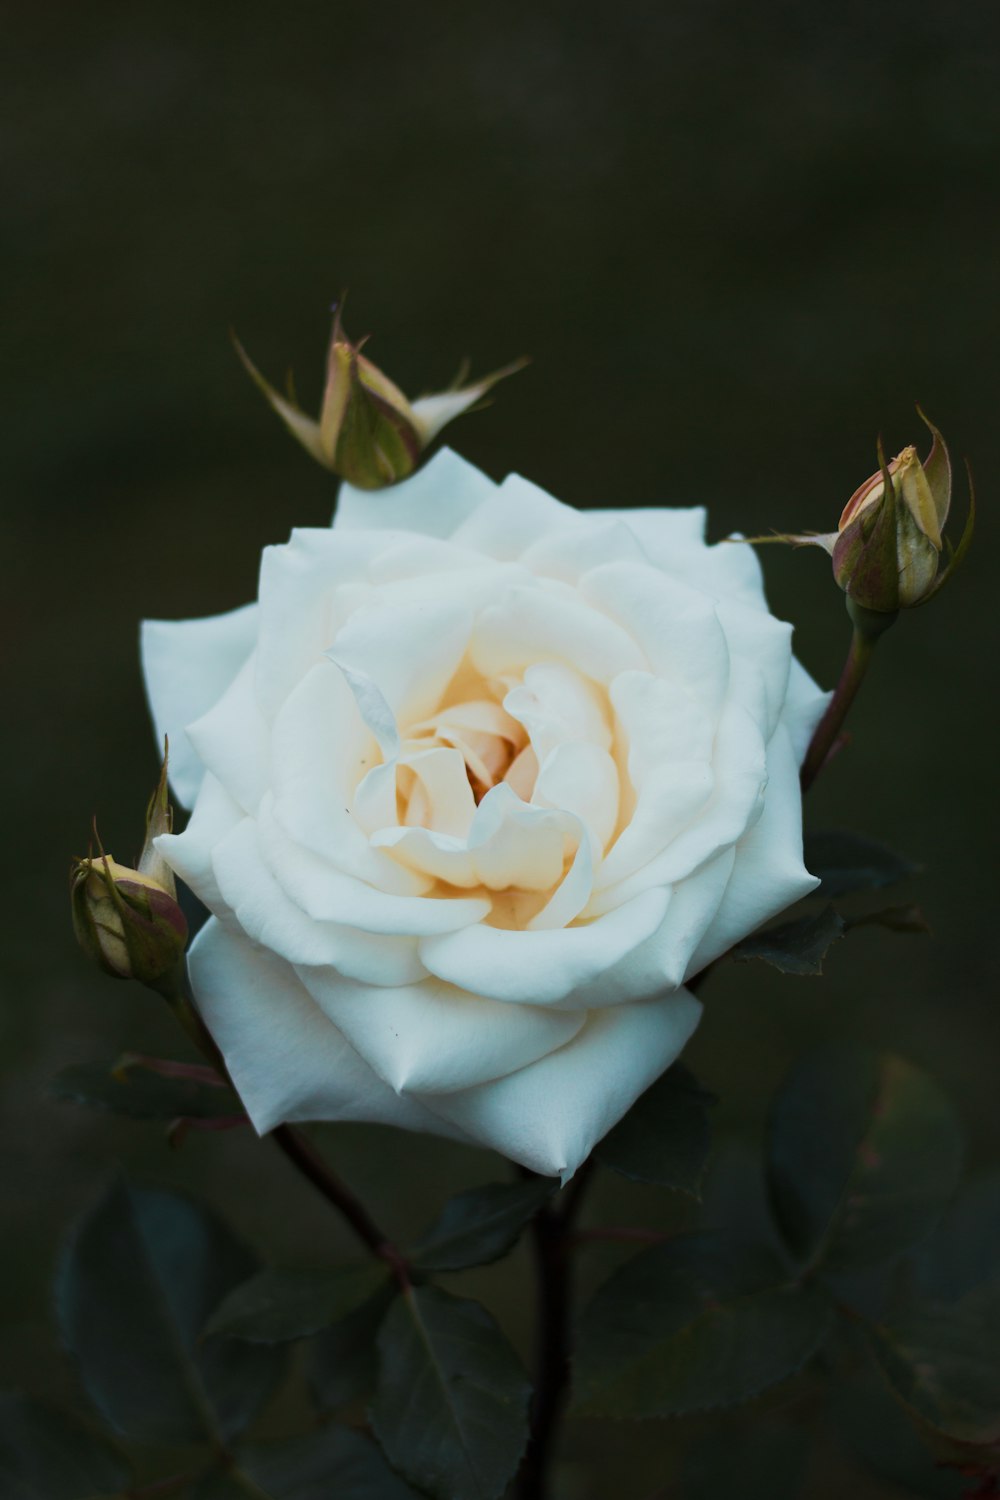 fotografia ravvicinata del fiore di rosa bianca